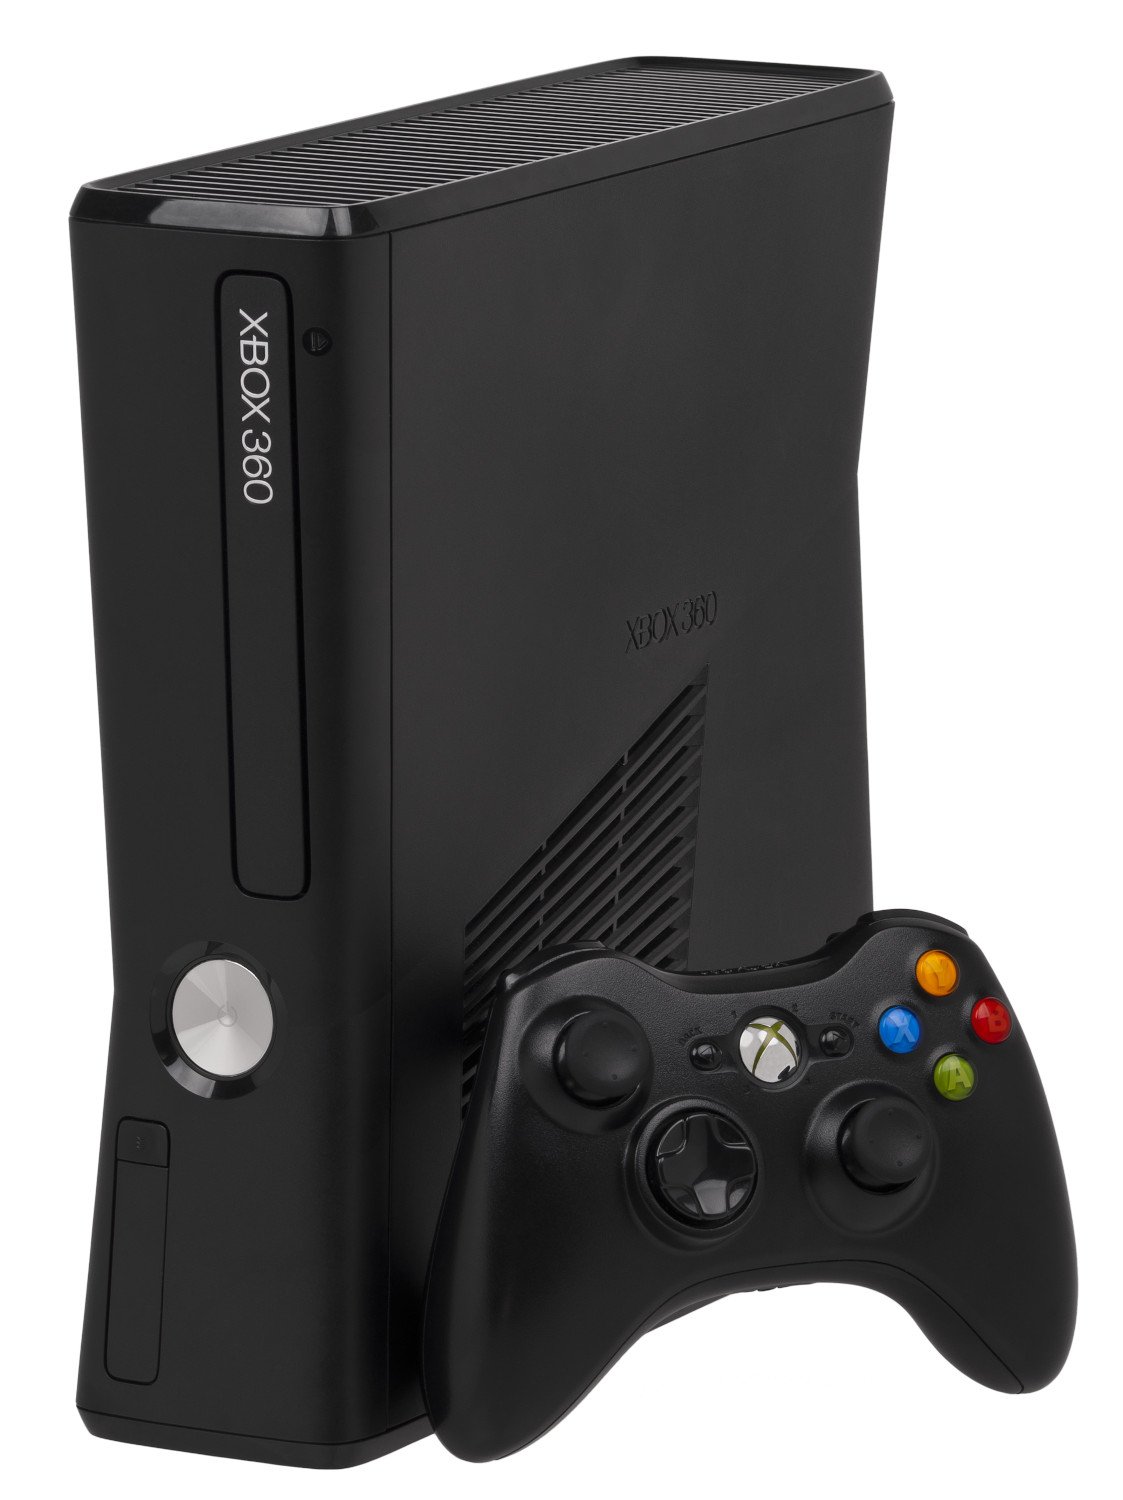 Microsoft Xbox 360 S - Game console - matte black - image 1 of 2